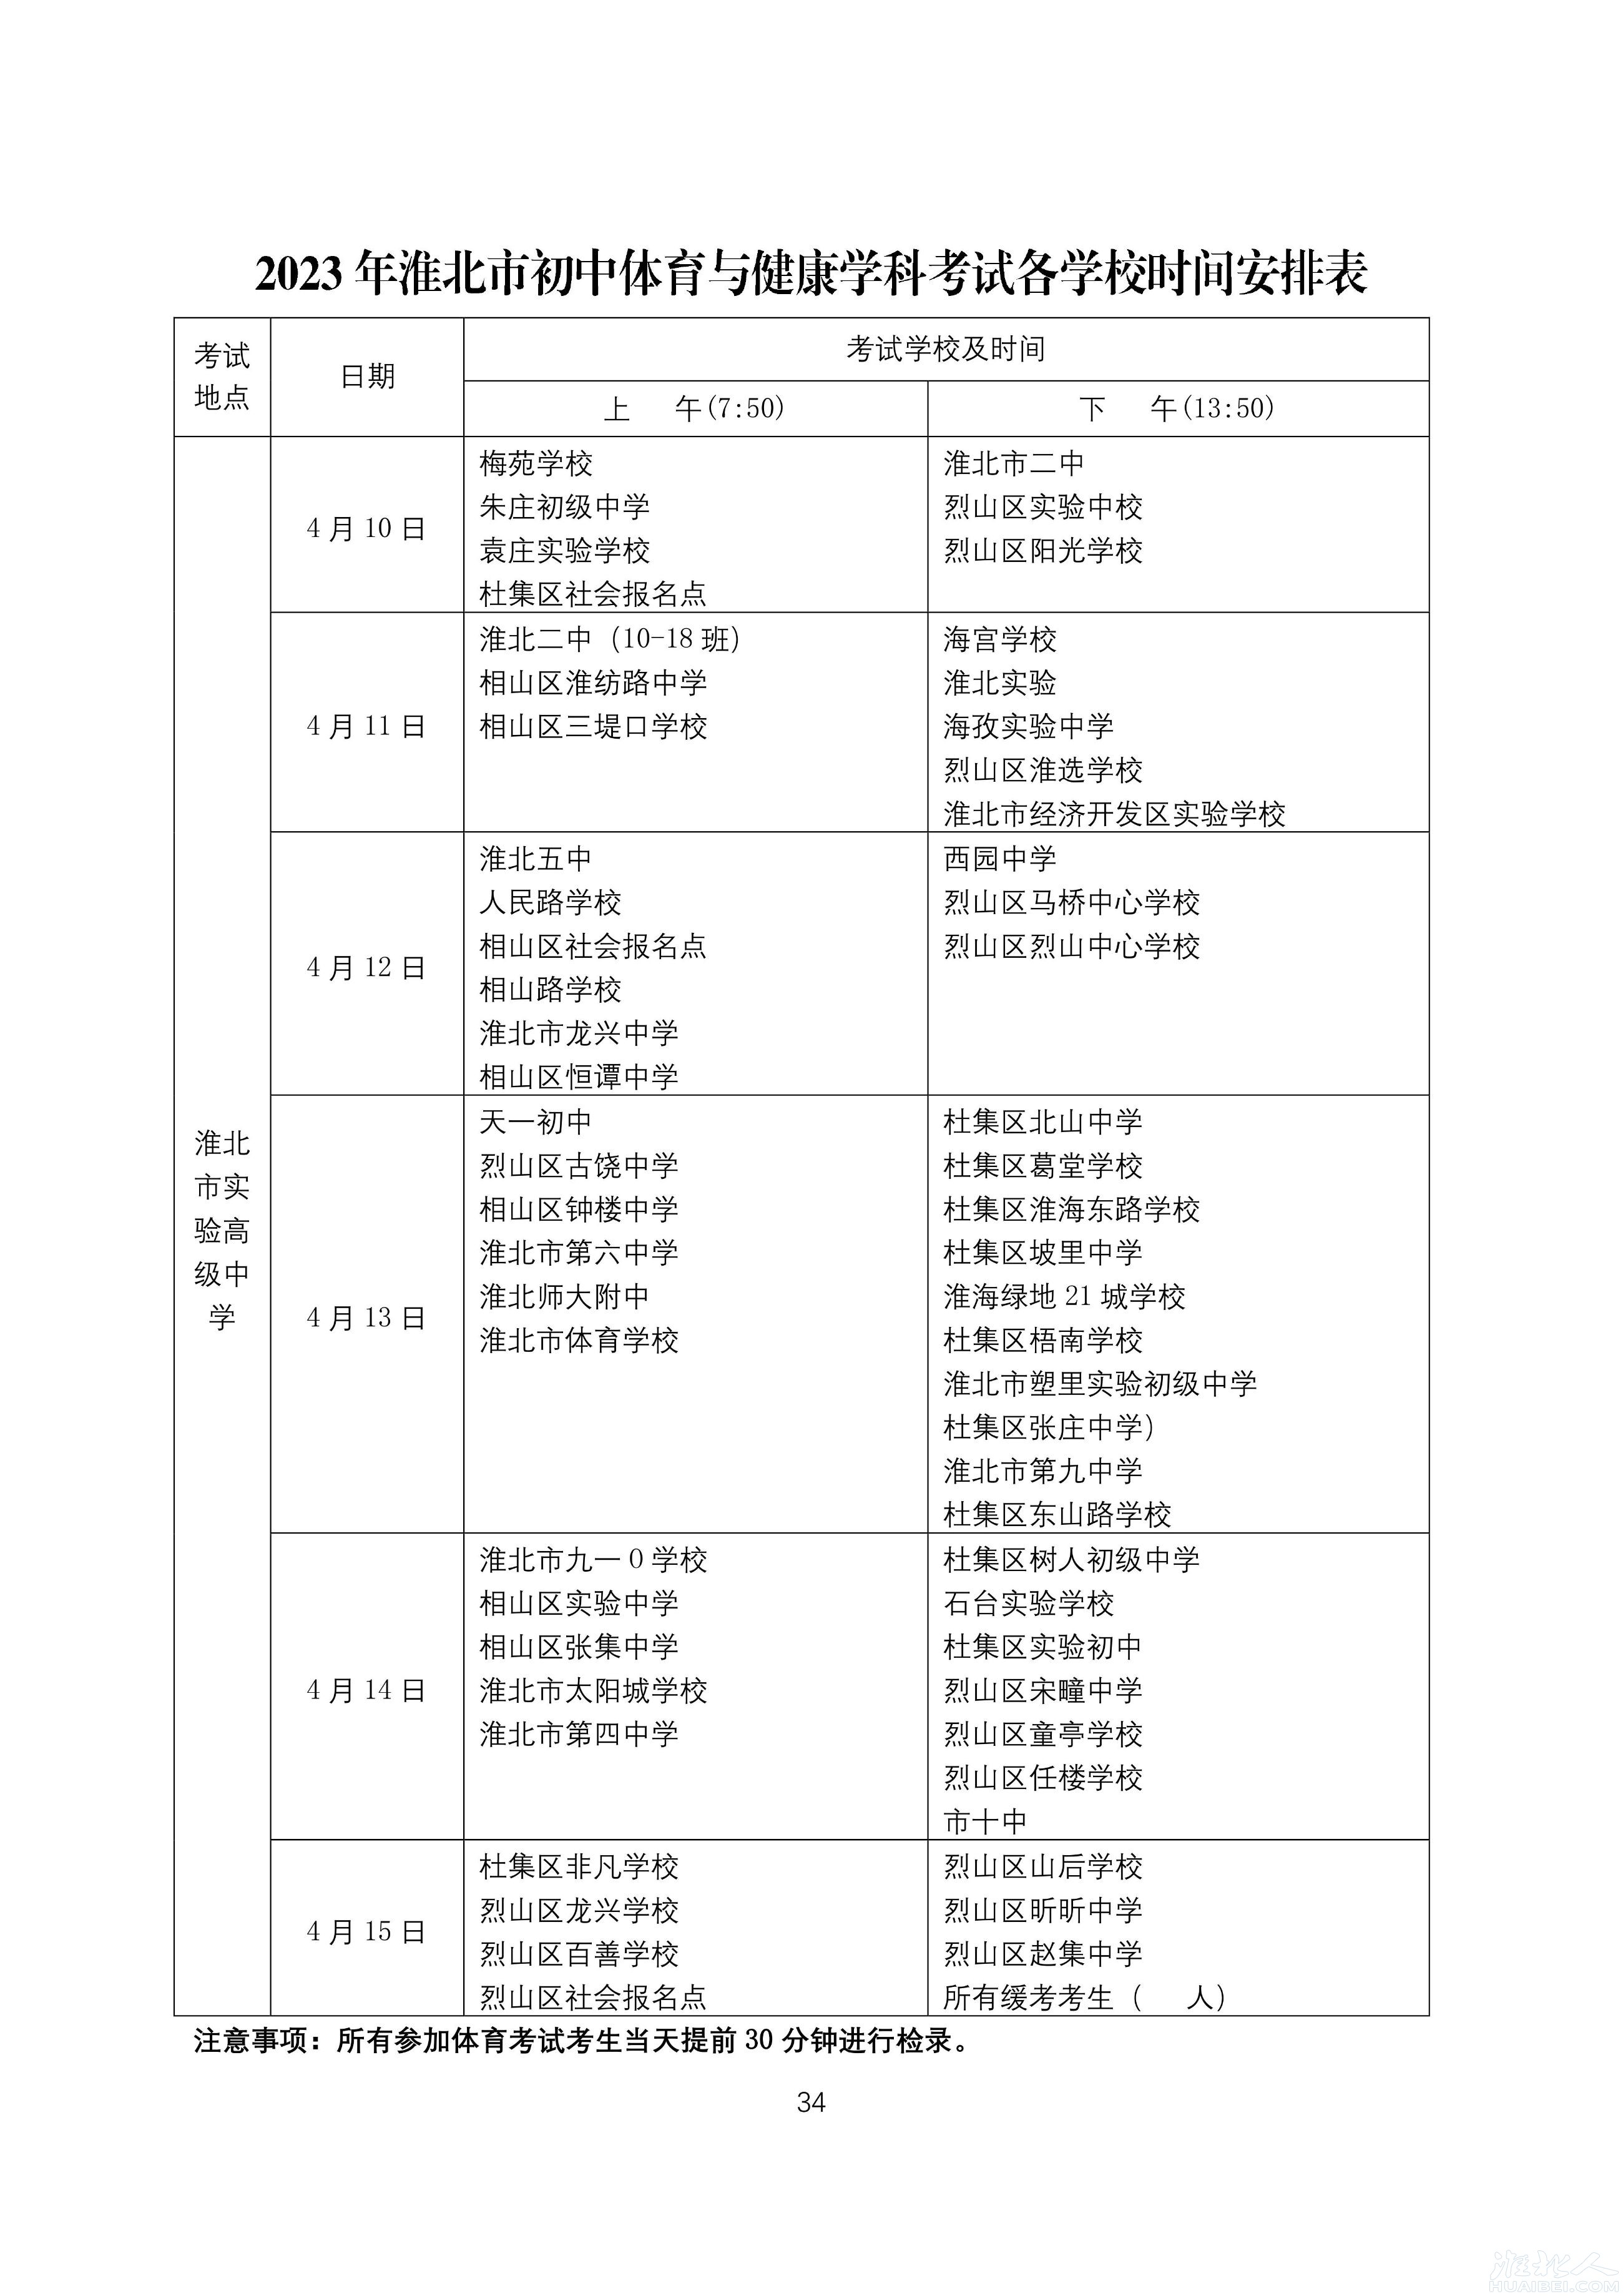 淮北市2023年初中体育与健康学科考试各学校时间安排表.jpg